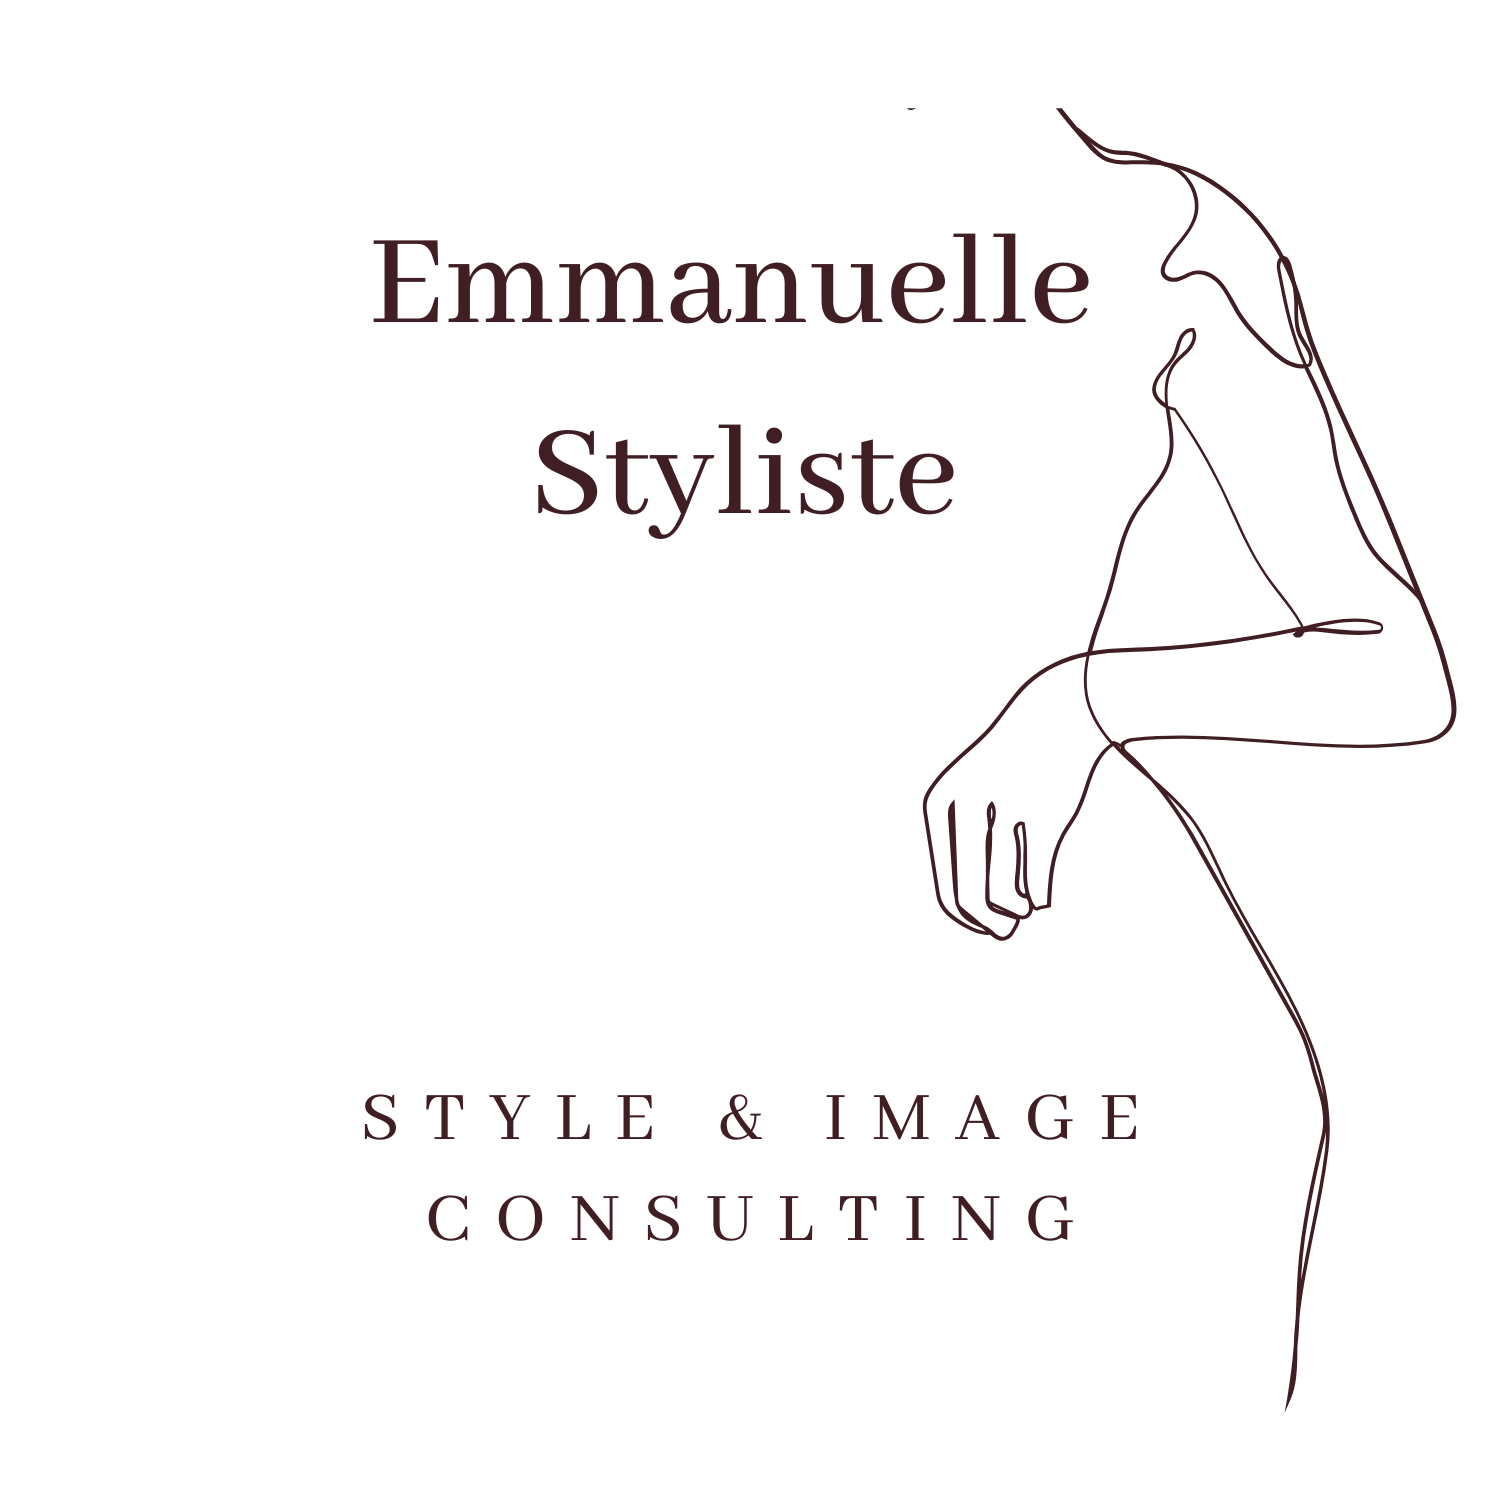 Emmanuelle Styliste